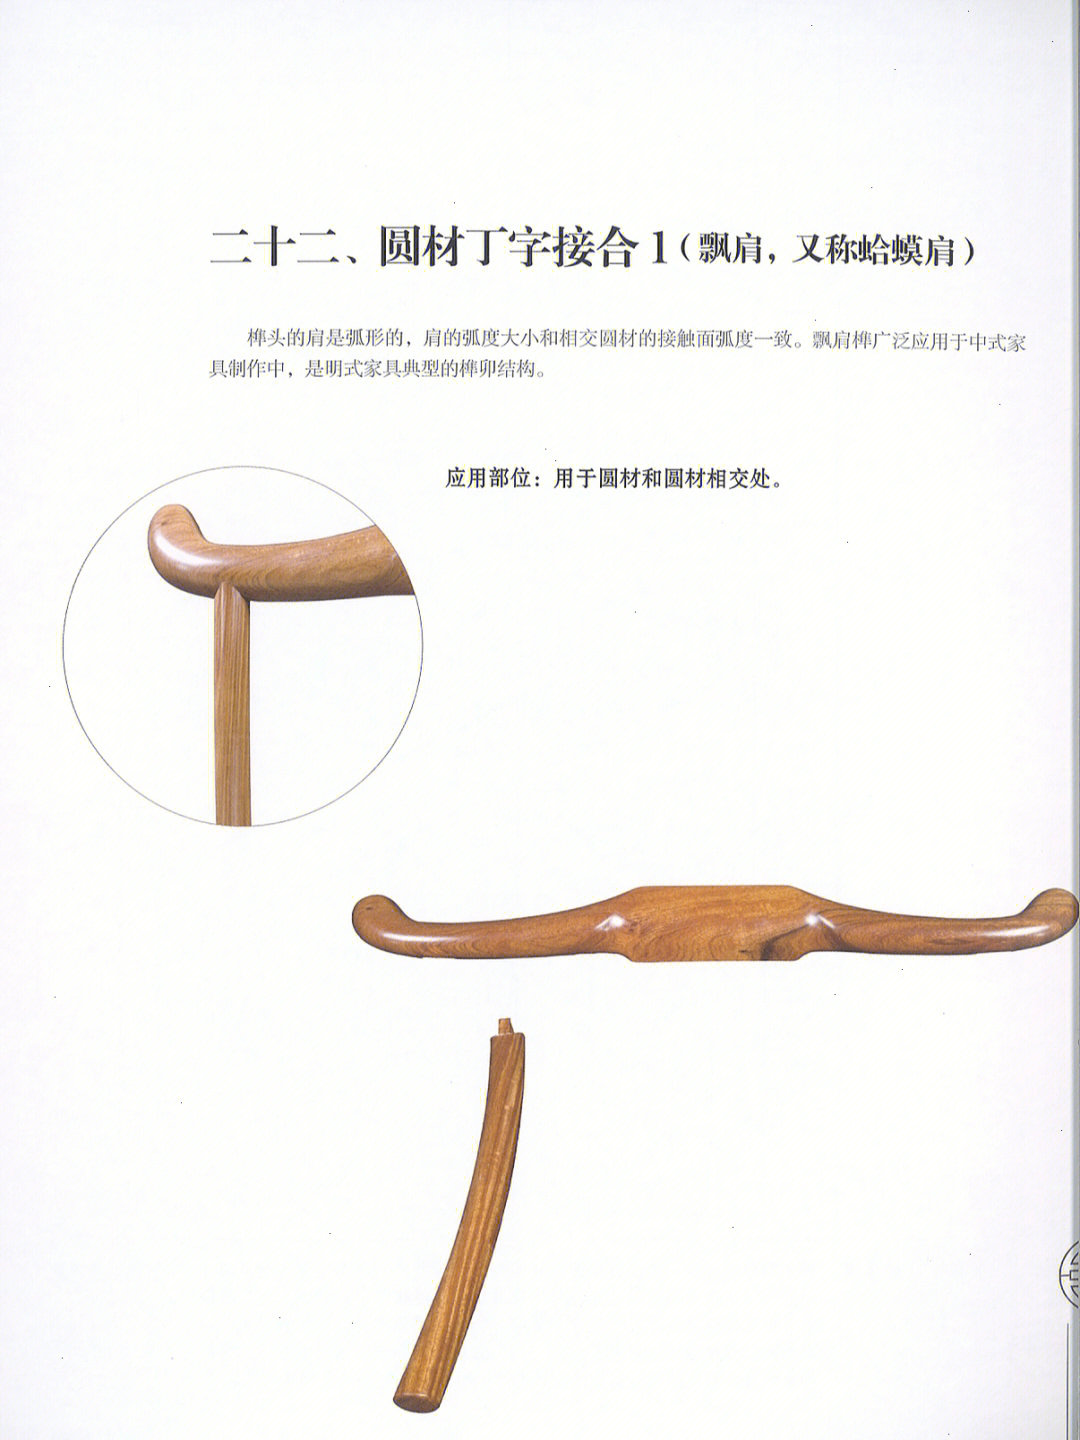 飘肩榫广泛应用于中式家具制作中,是明式家具典型的榫卯结构